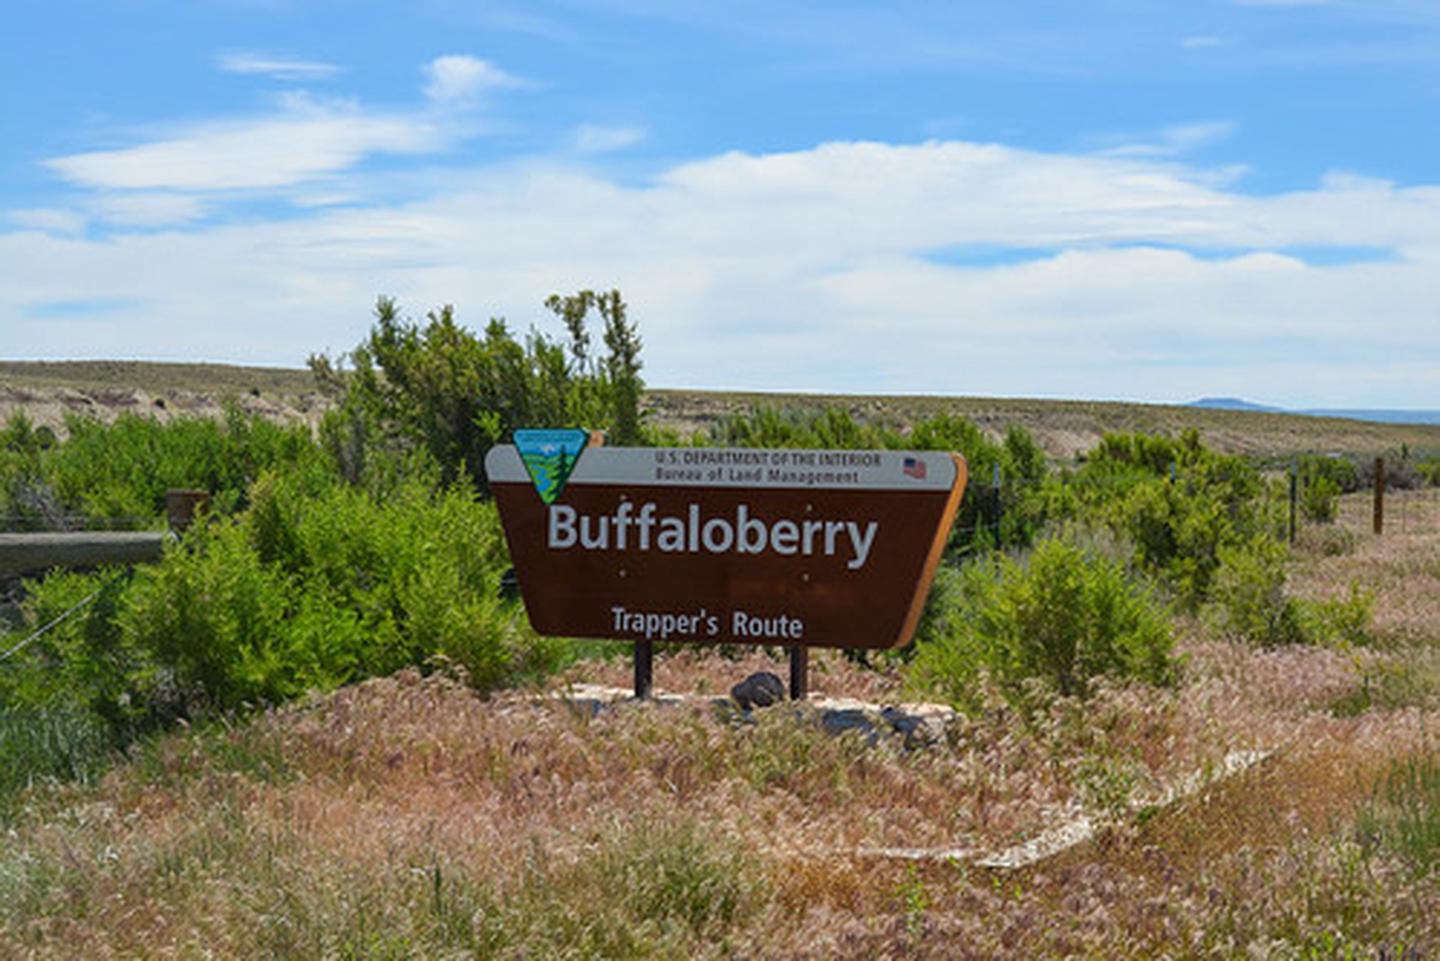 Buffaloberry Campground sign